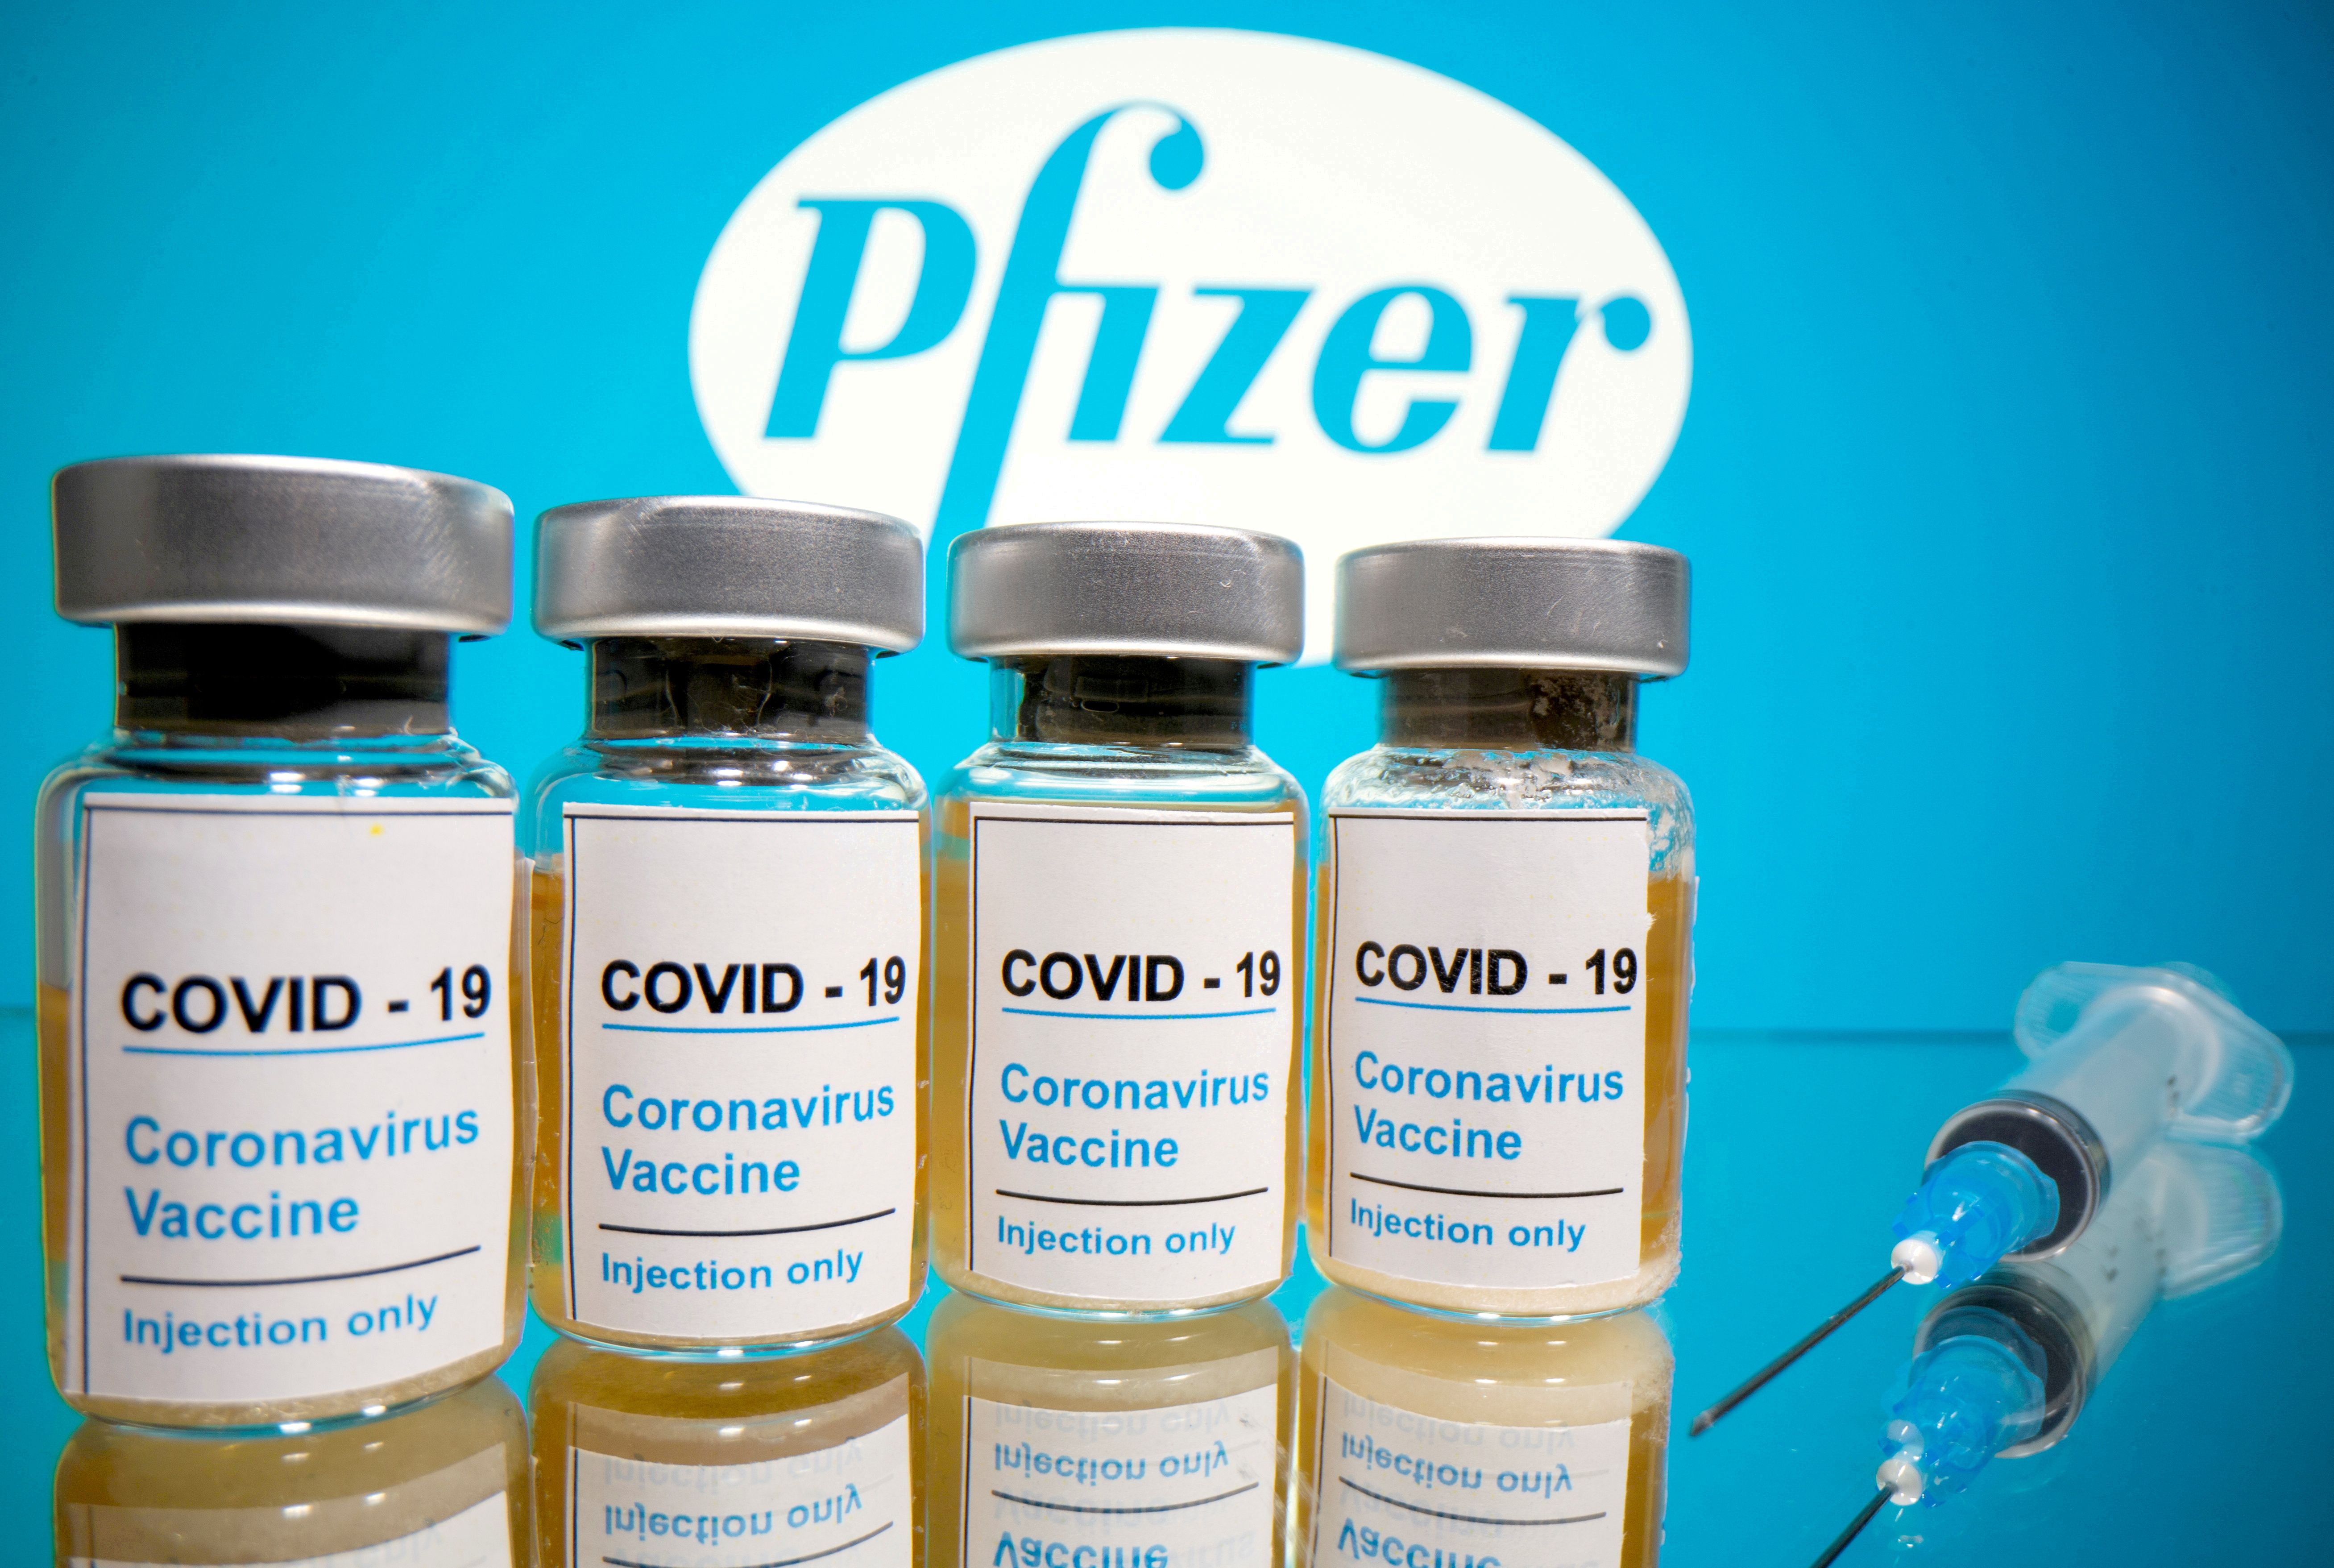 La vacuna Pfizer aumenta tus niveles de testosterona según estudio